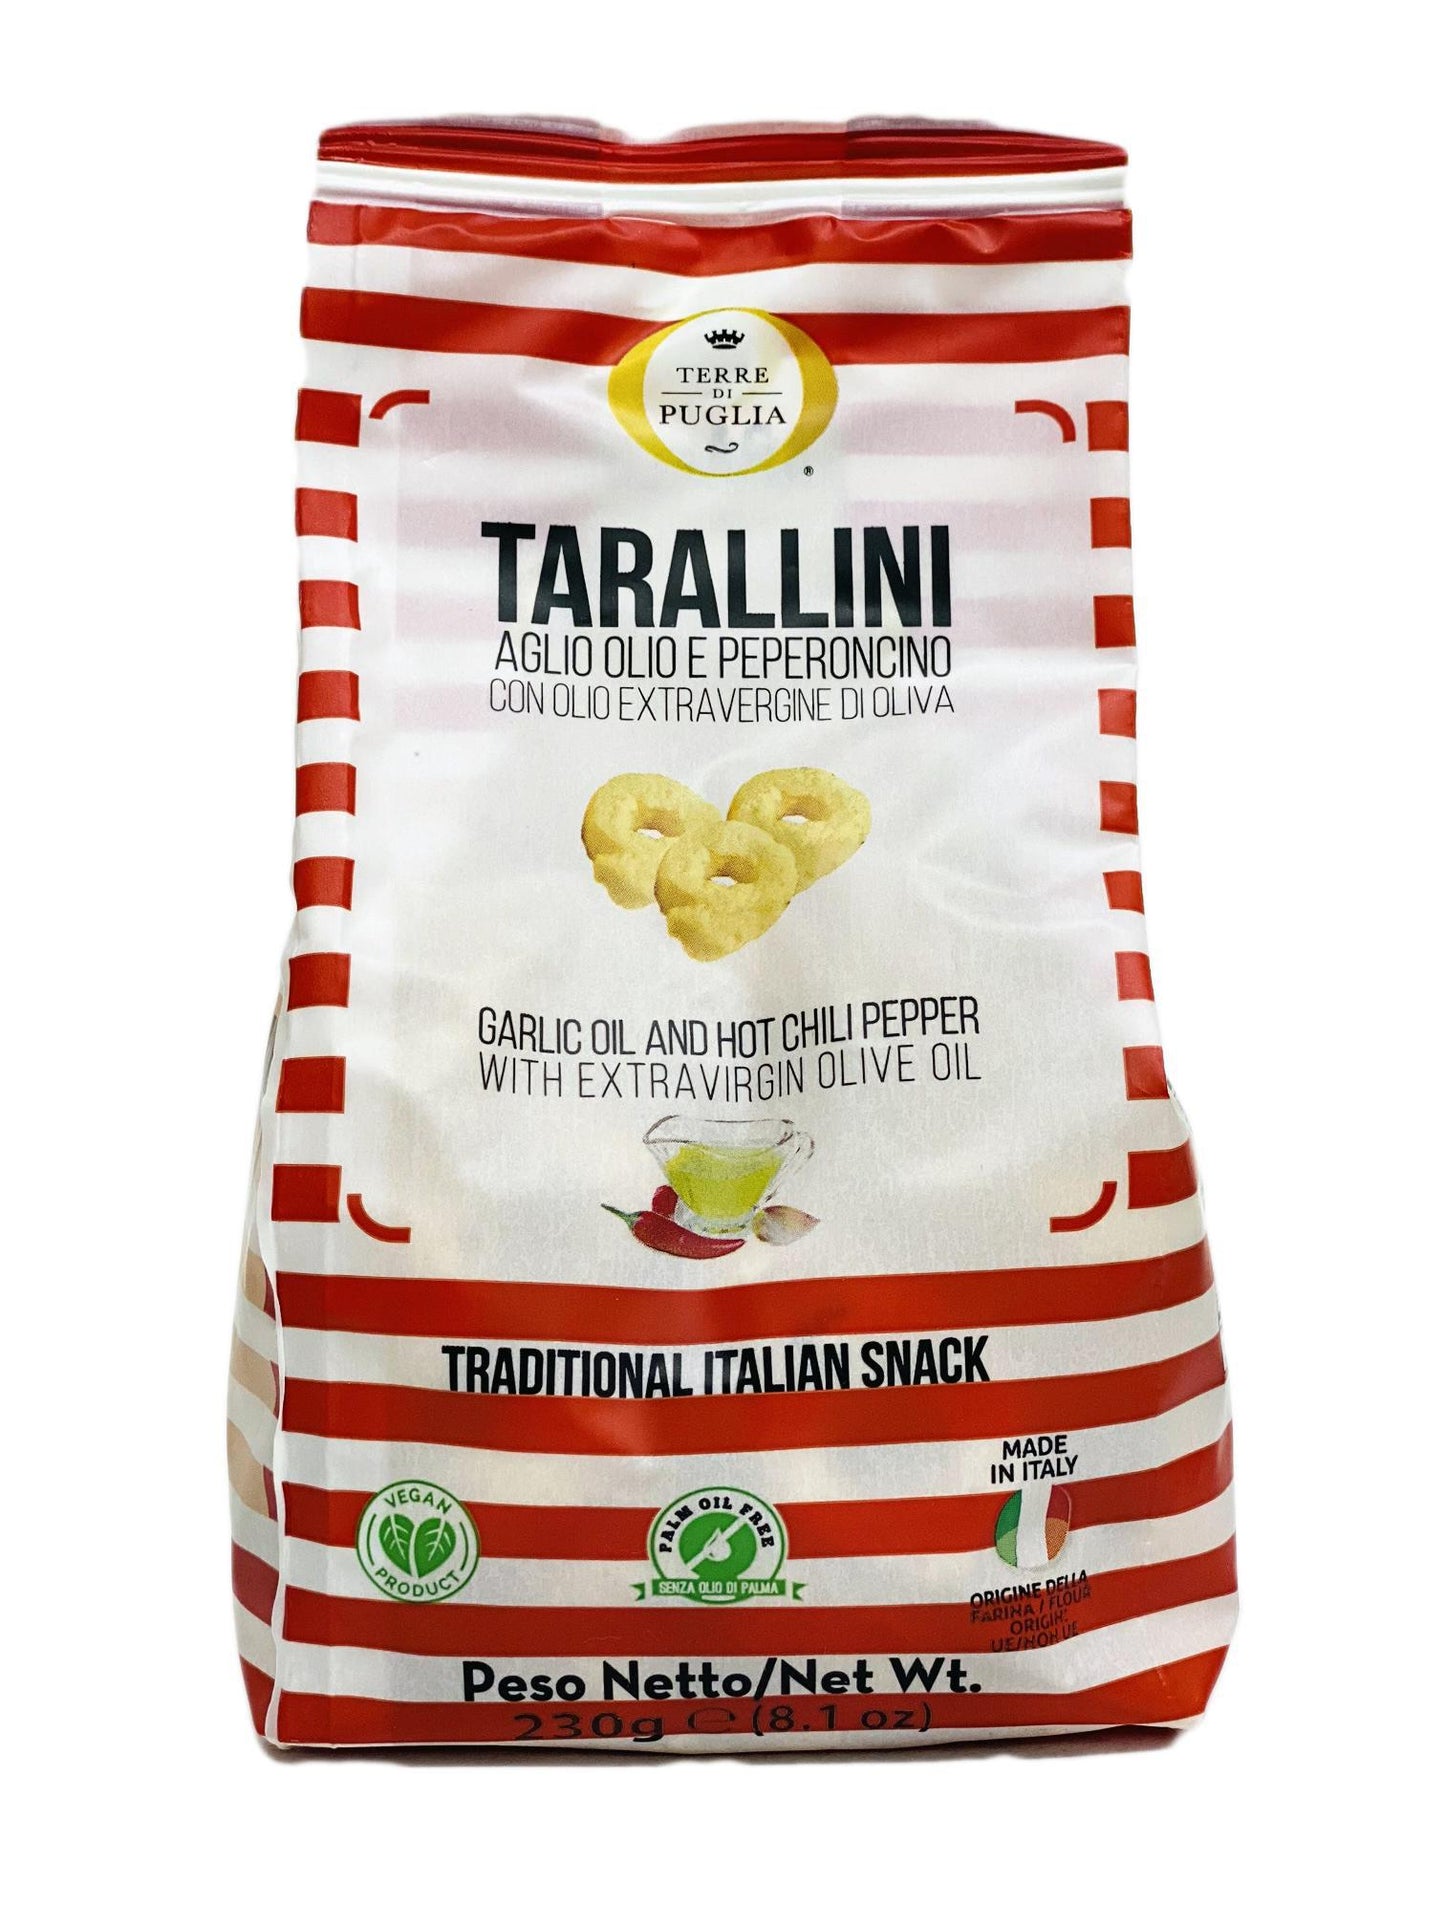 Terre Di Puglia Tarallini Garlic Oil and Hot Chili Pepper, 8.1 oz